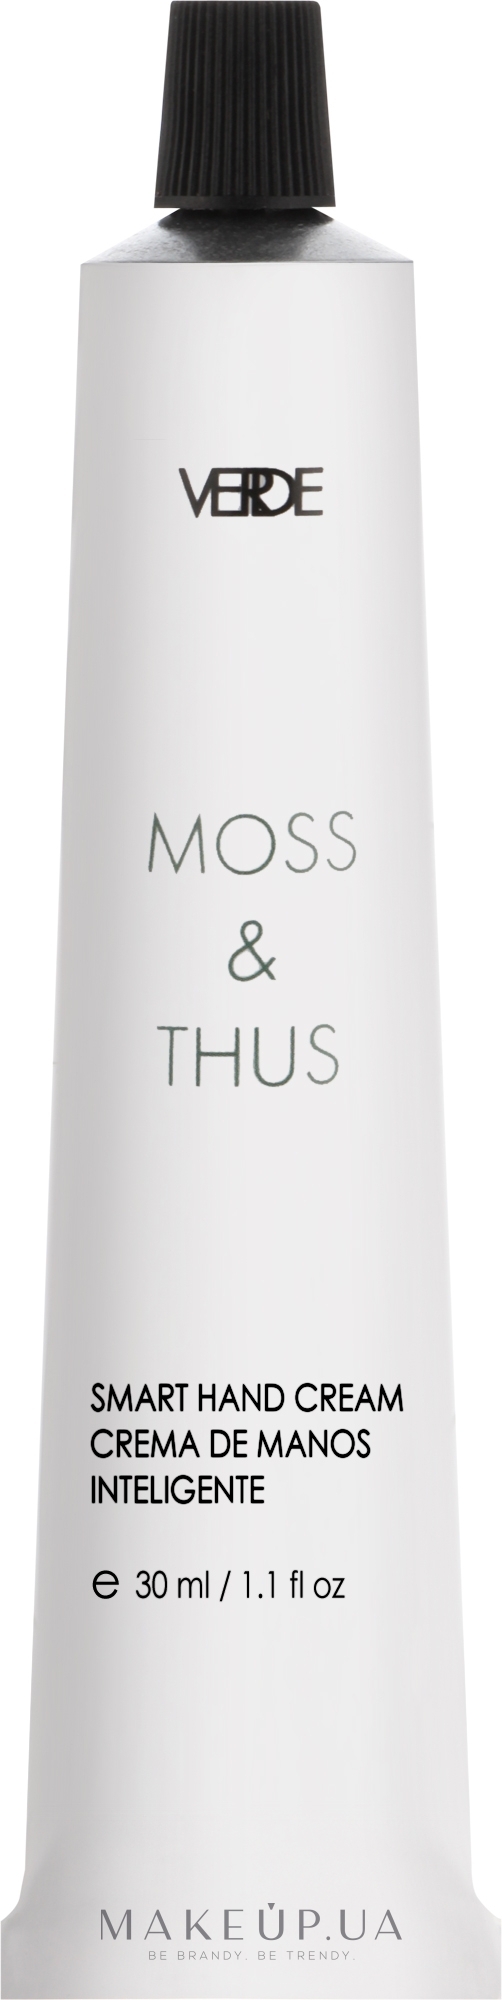 Питательный крем для рук - Verde Moss & Thus Smart Hand Cream — фото 30ml